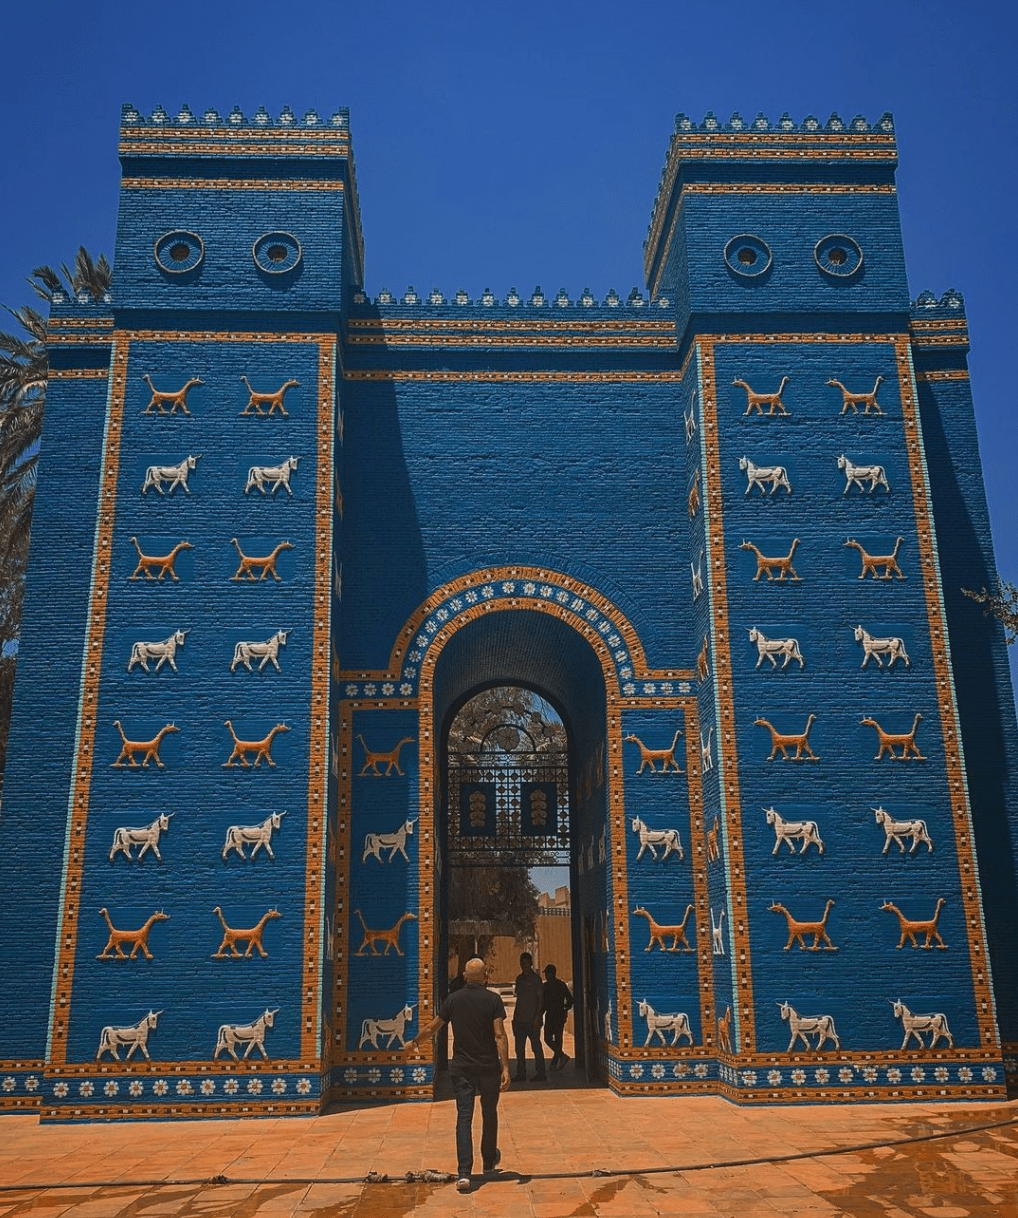 是进入巴比伦城的8座城门之一,整体呈现出明亮的蓝绿色,表面装饰有数